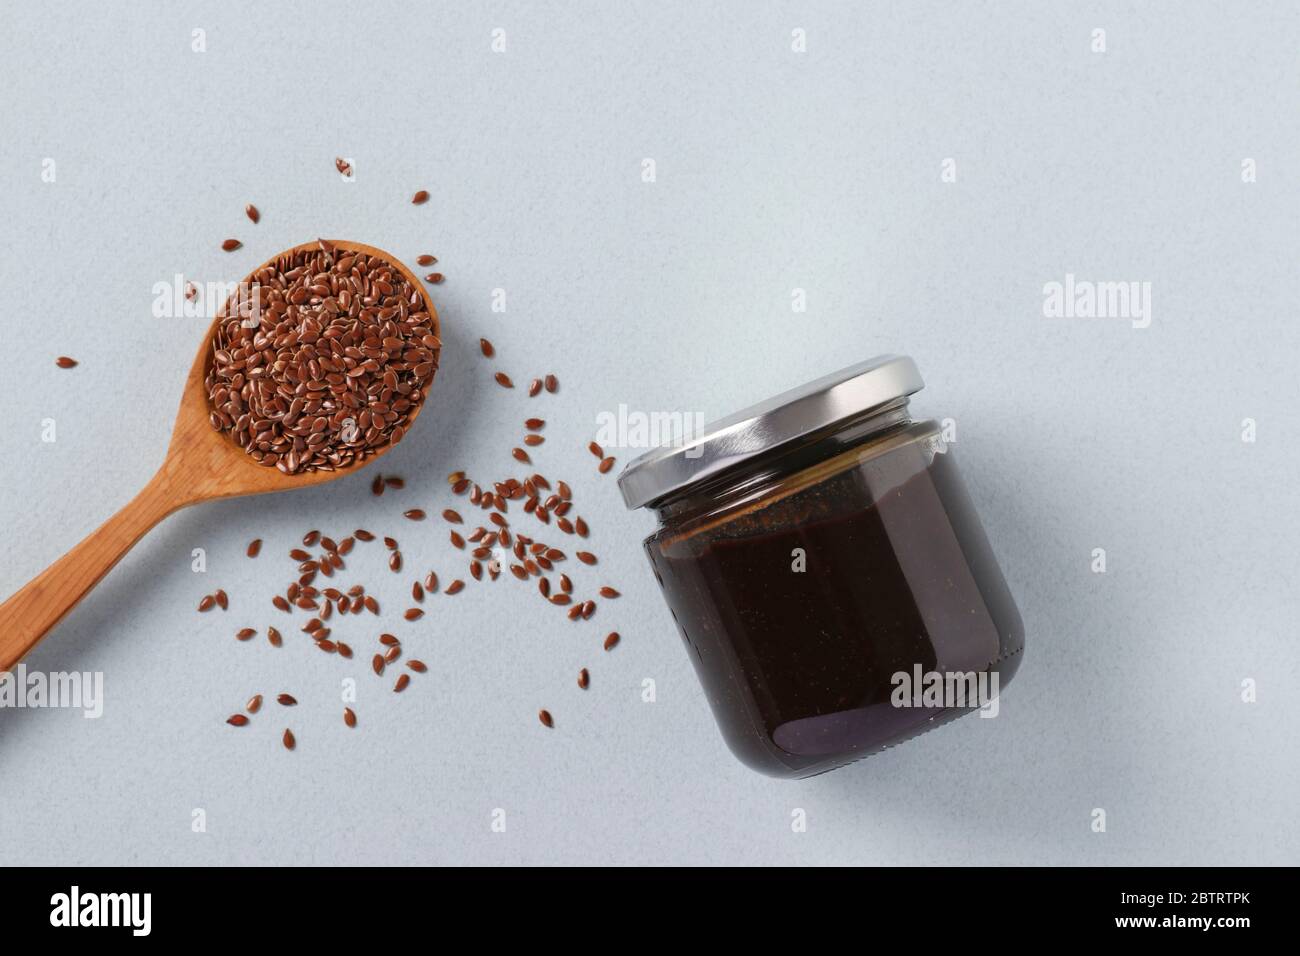 Pasta organica vegana di semi di lino in vaso di vetro e semi di lino in cucchiaio su sfondo azzurro, urbach, prodotti alimentari sani, vista dall'alto Foto Stock